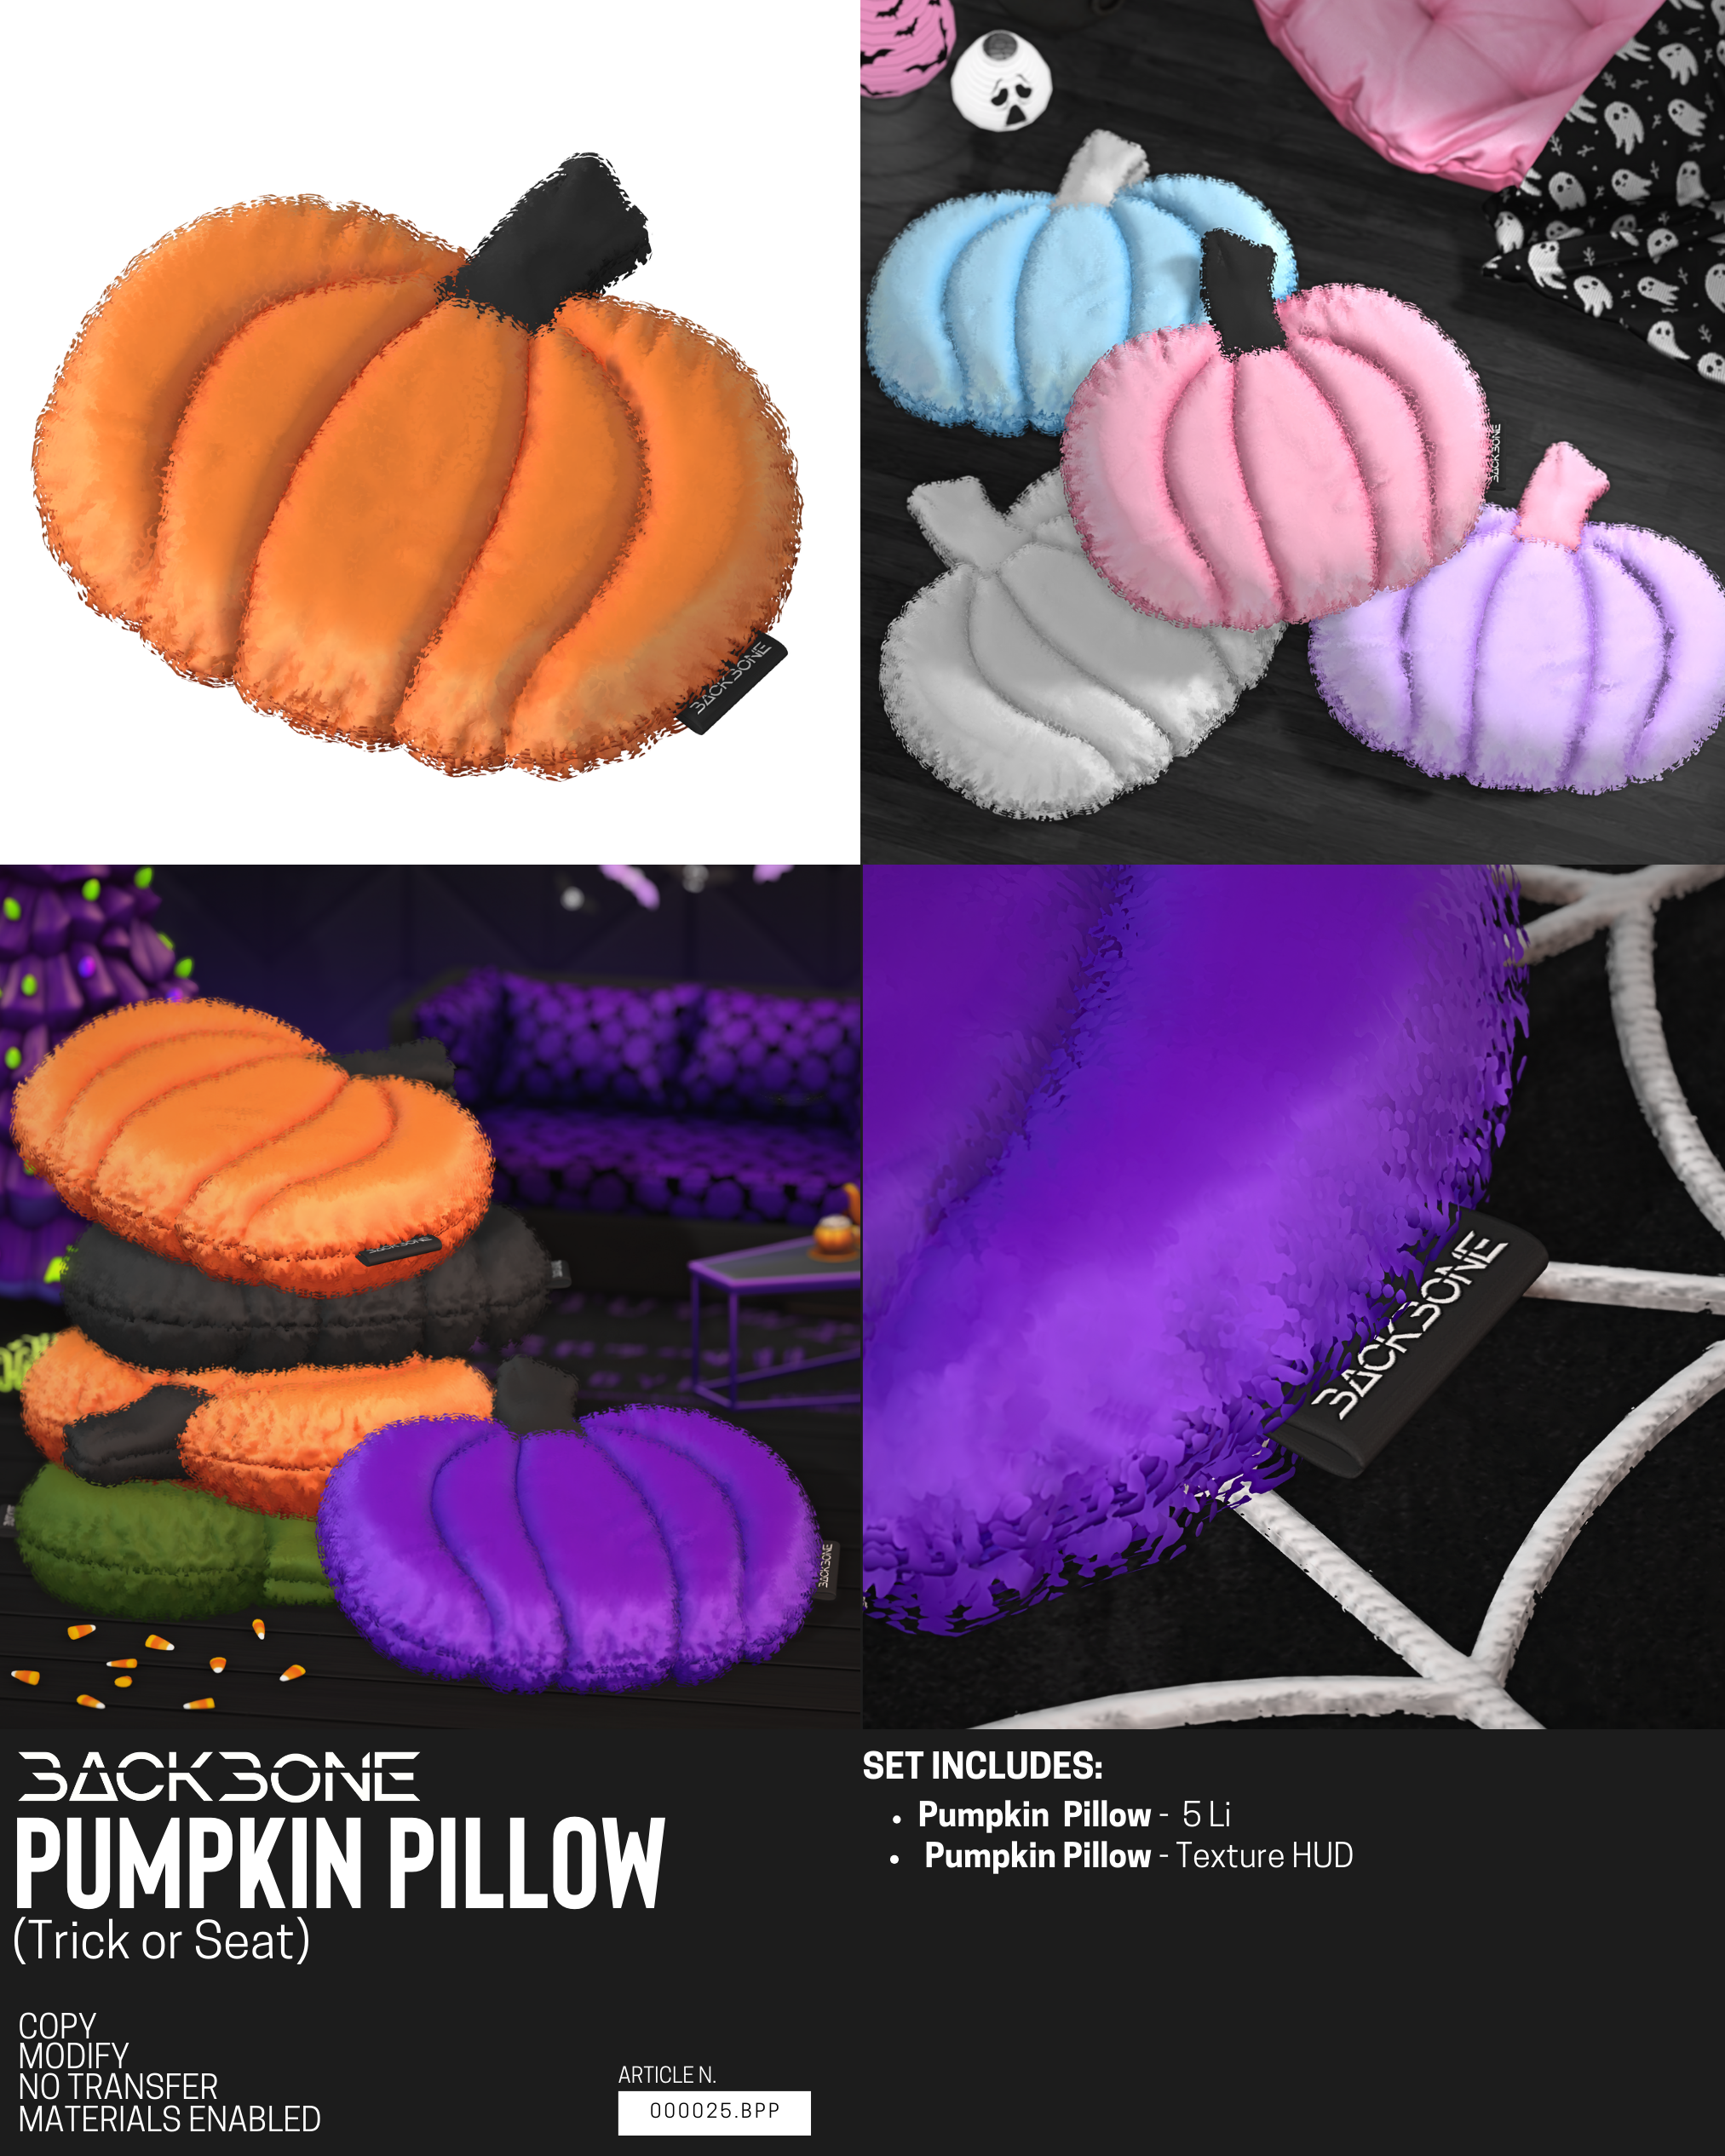 BackBone – Pumpkin Pillow